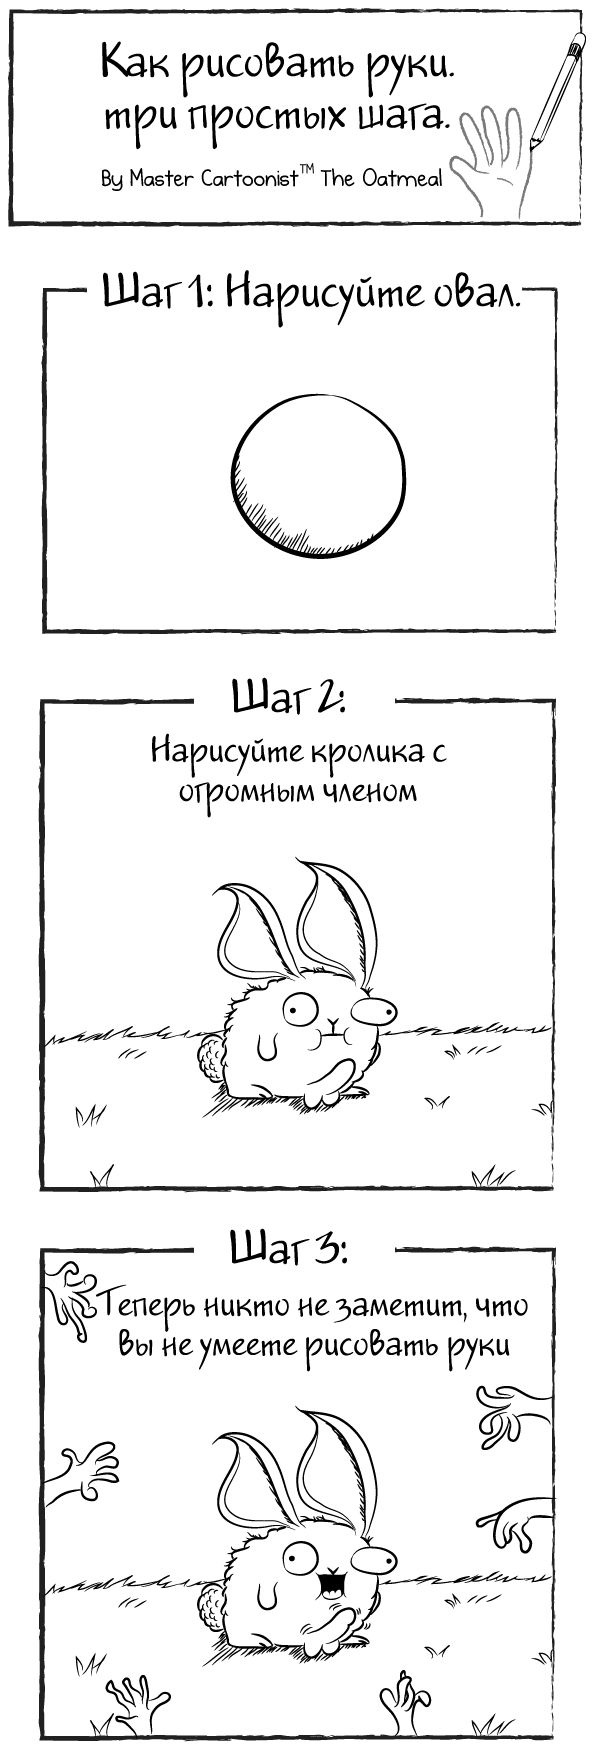 Смешные комиксы 03.11.2014 (19 картинок)